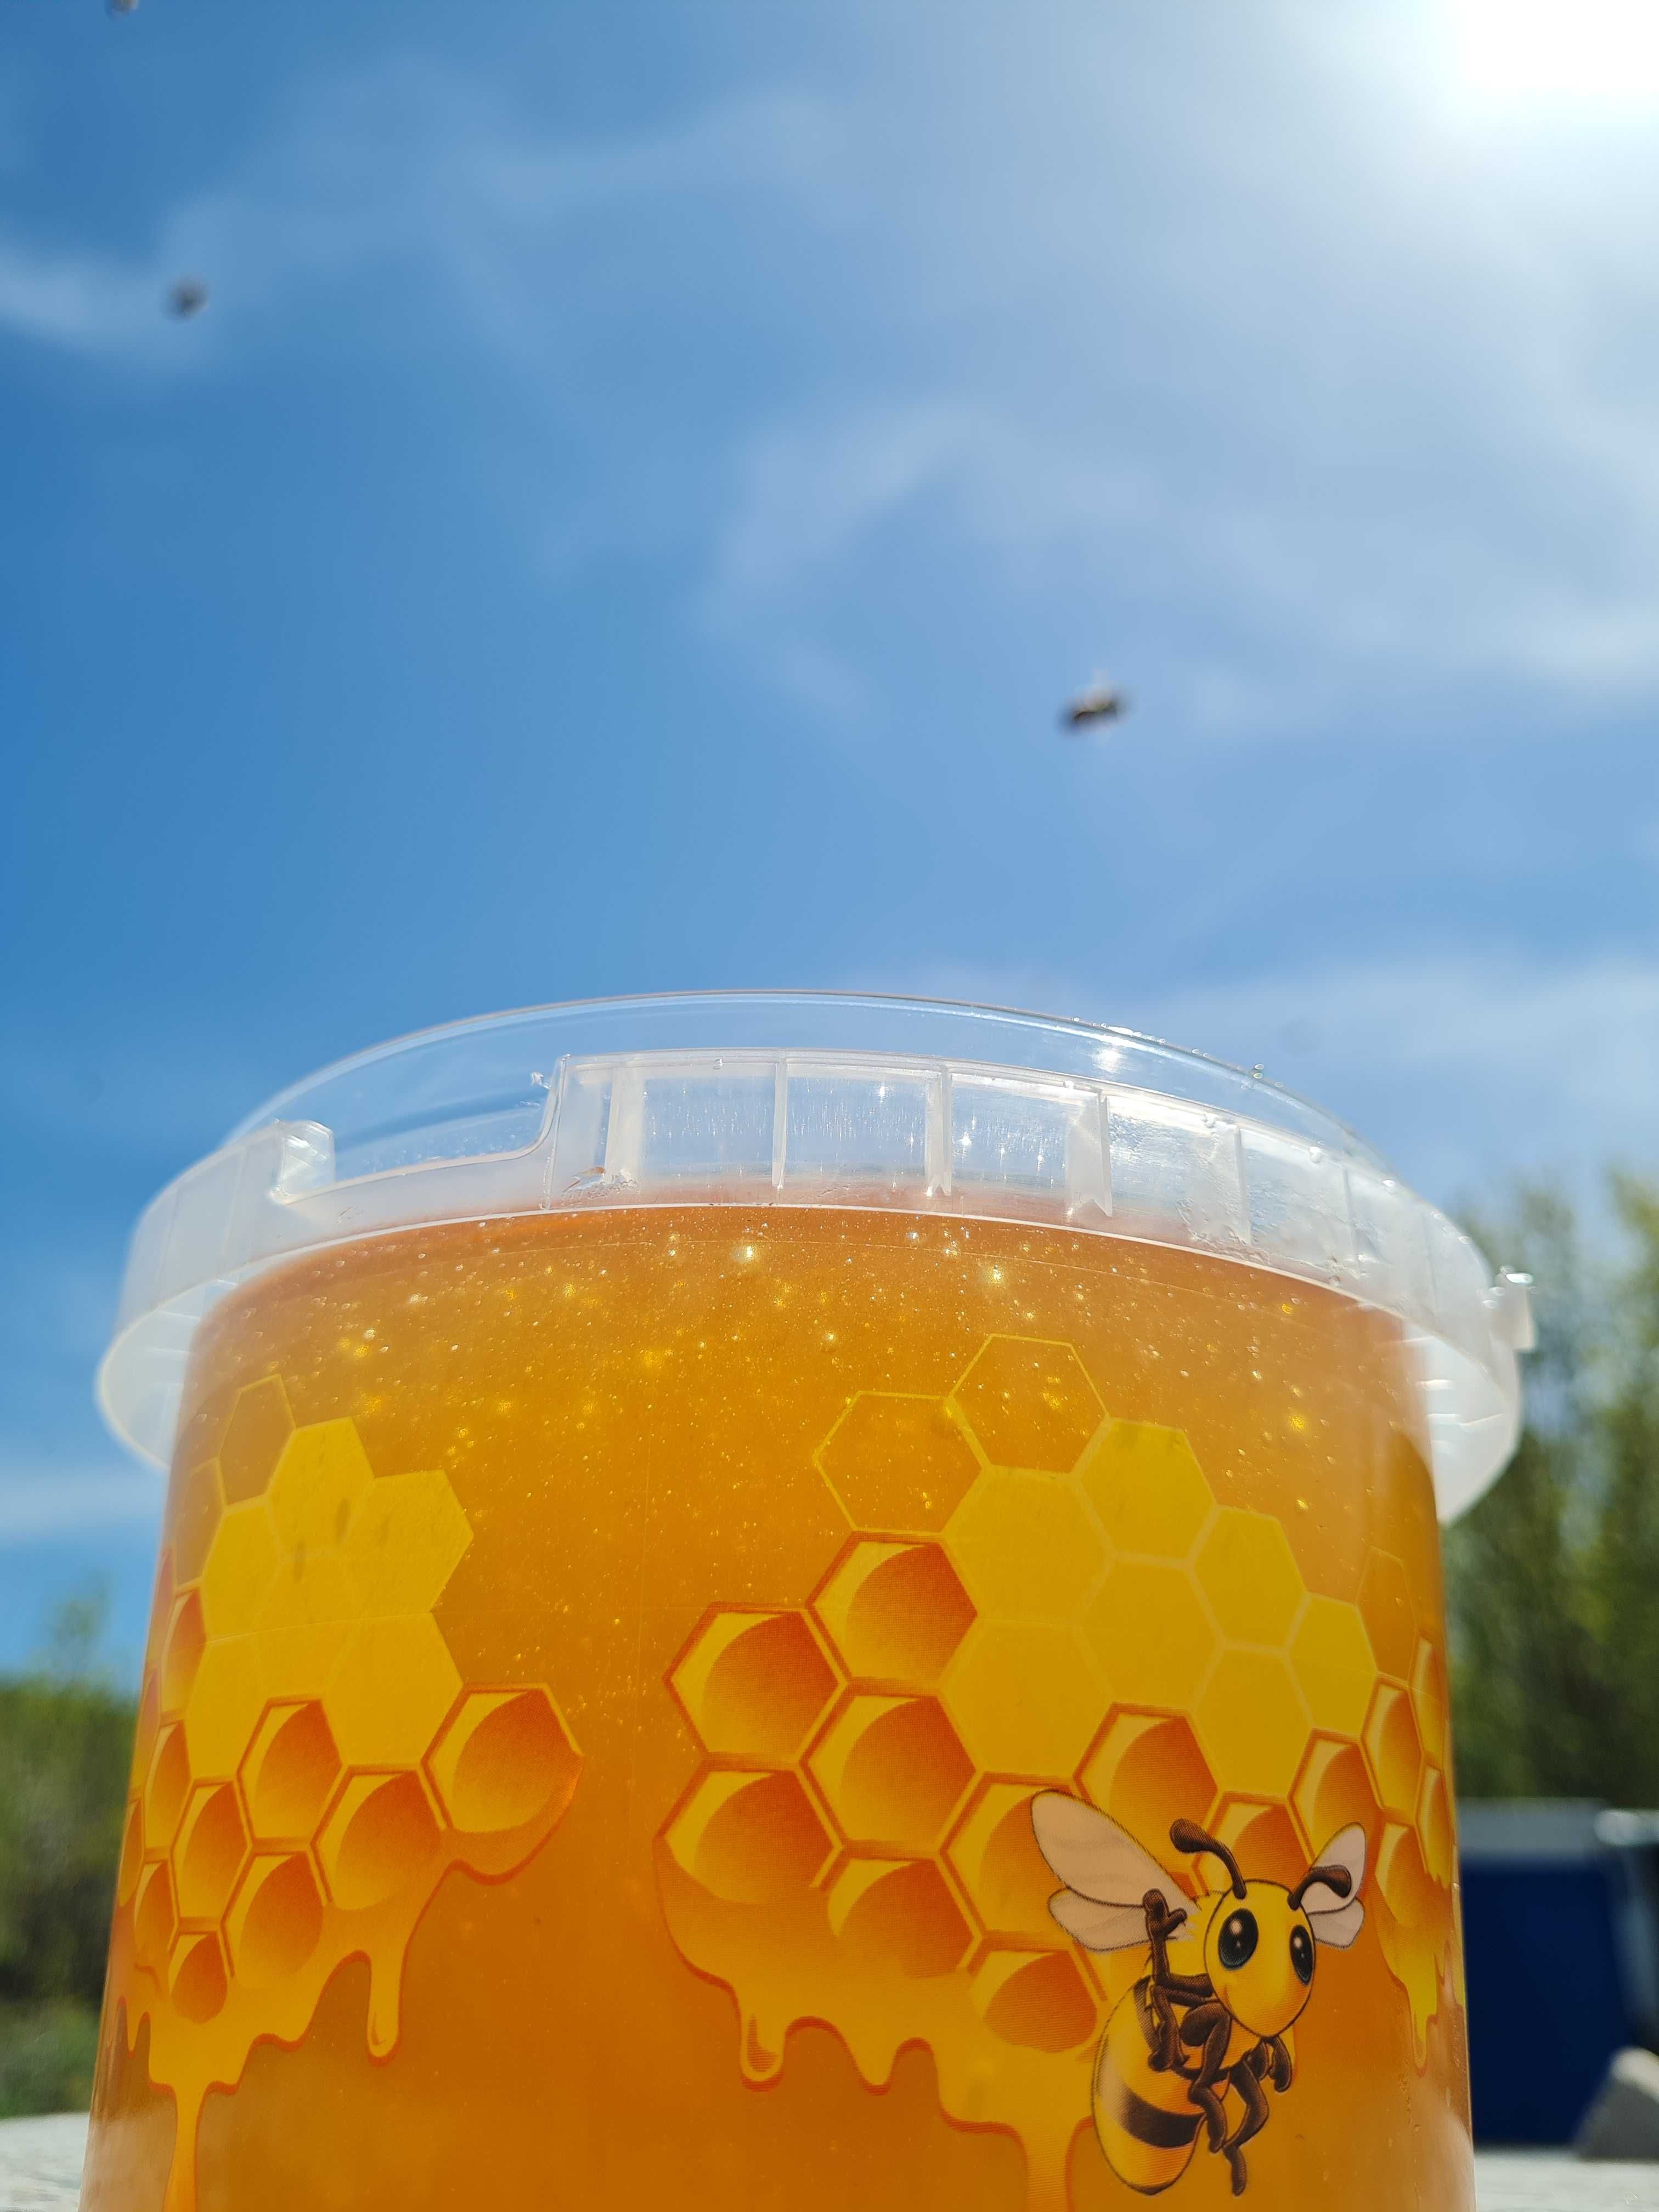 Мёд натуральный с Восточного Казахстана